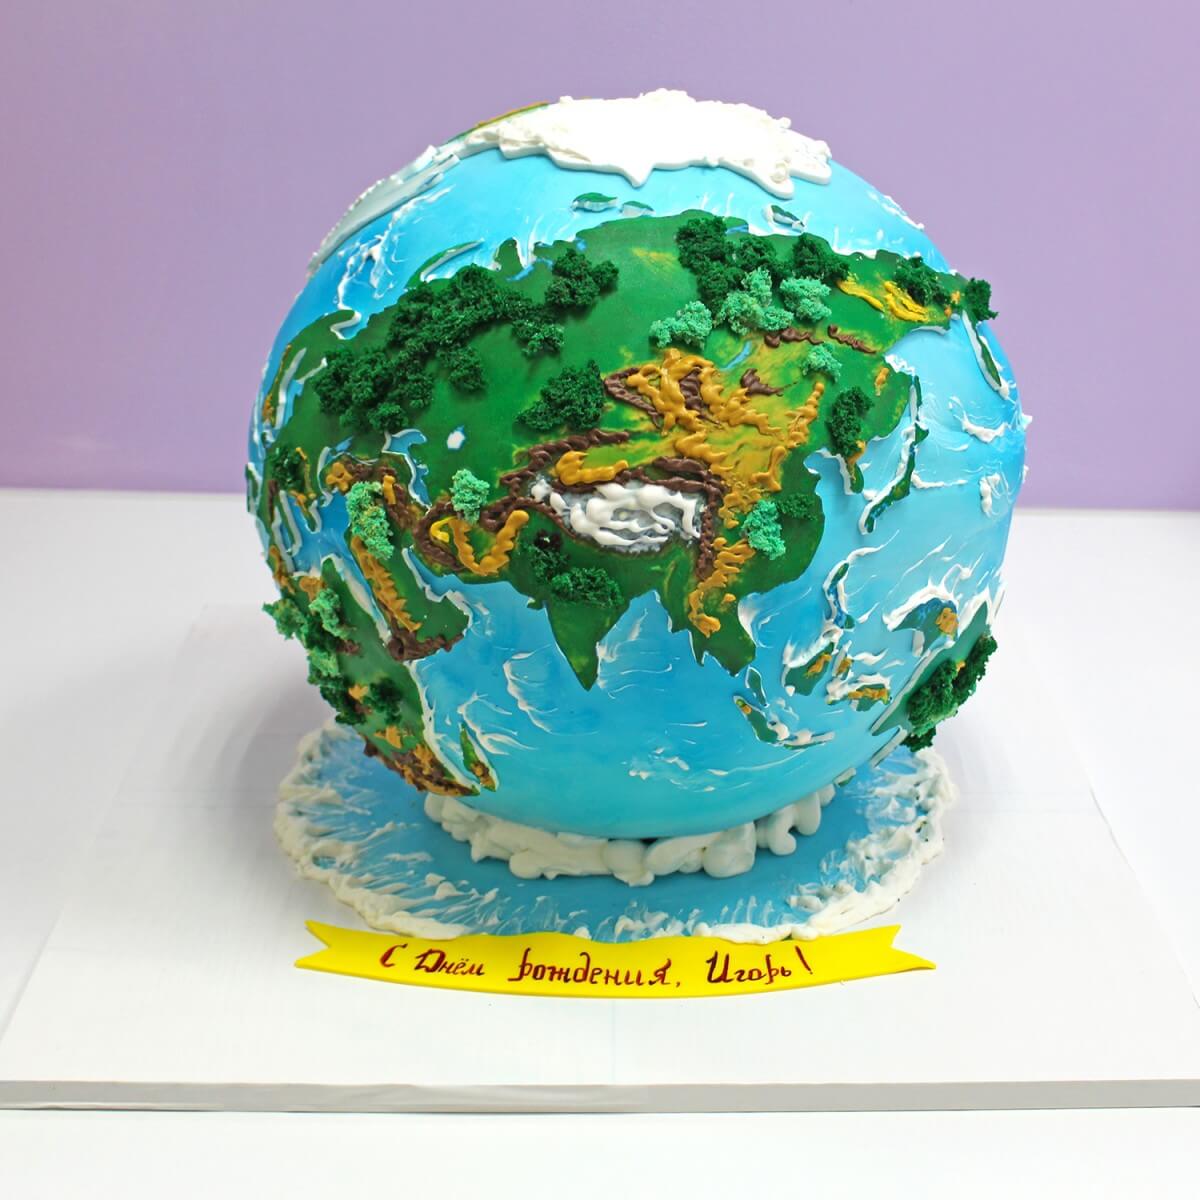 Торт "Земной шар"